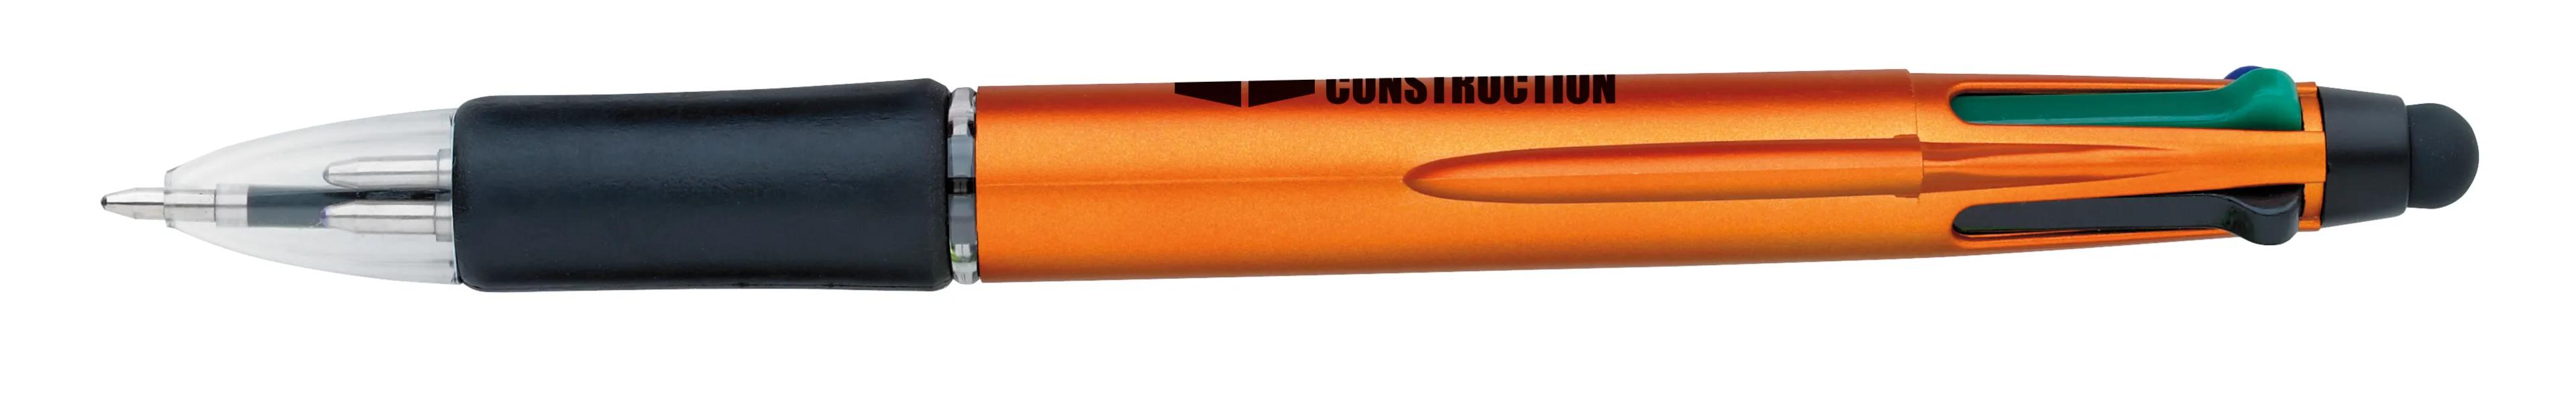 Orbitor Metallic Stylus Pen 15 of 56